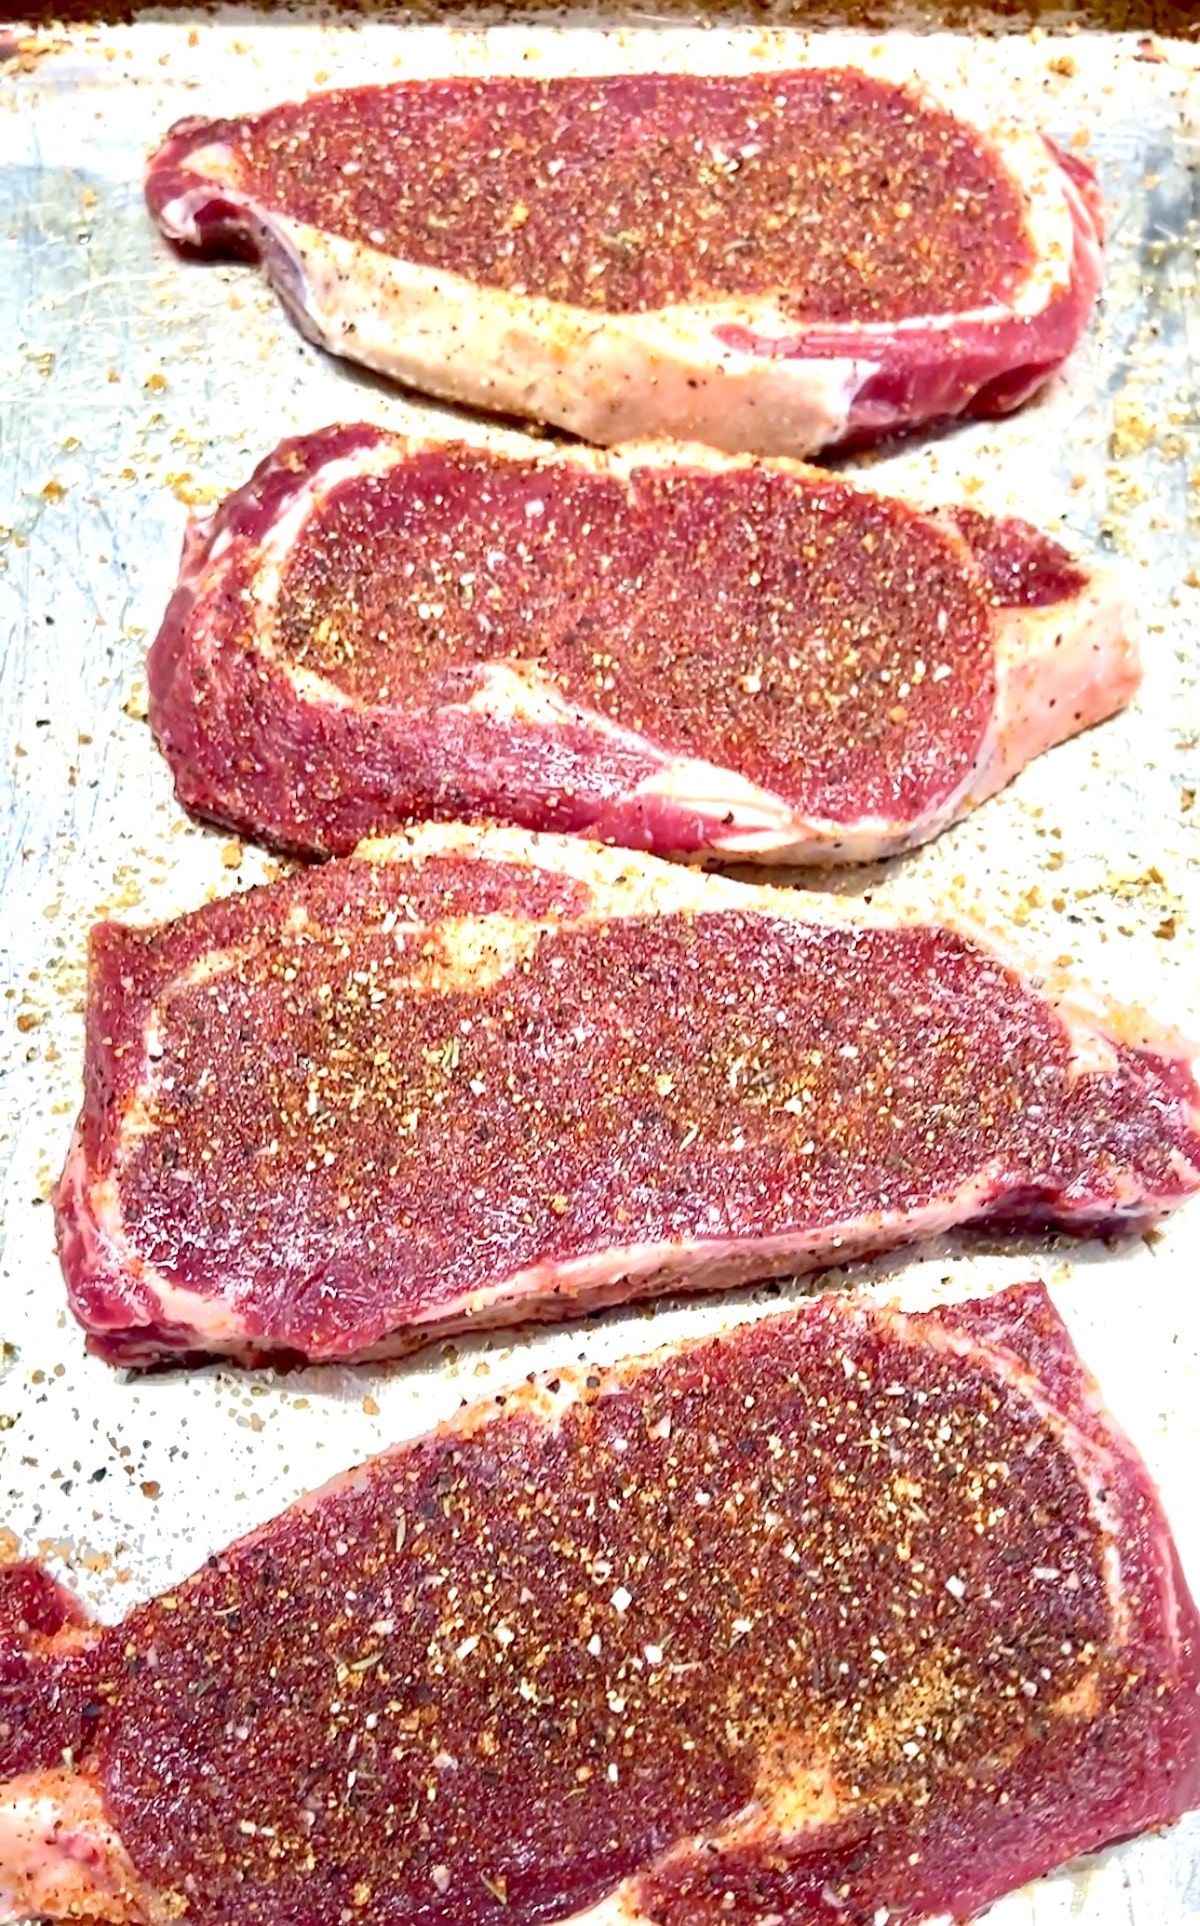 Seasoned ribeye steaks ready to grill.